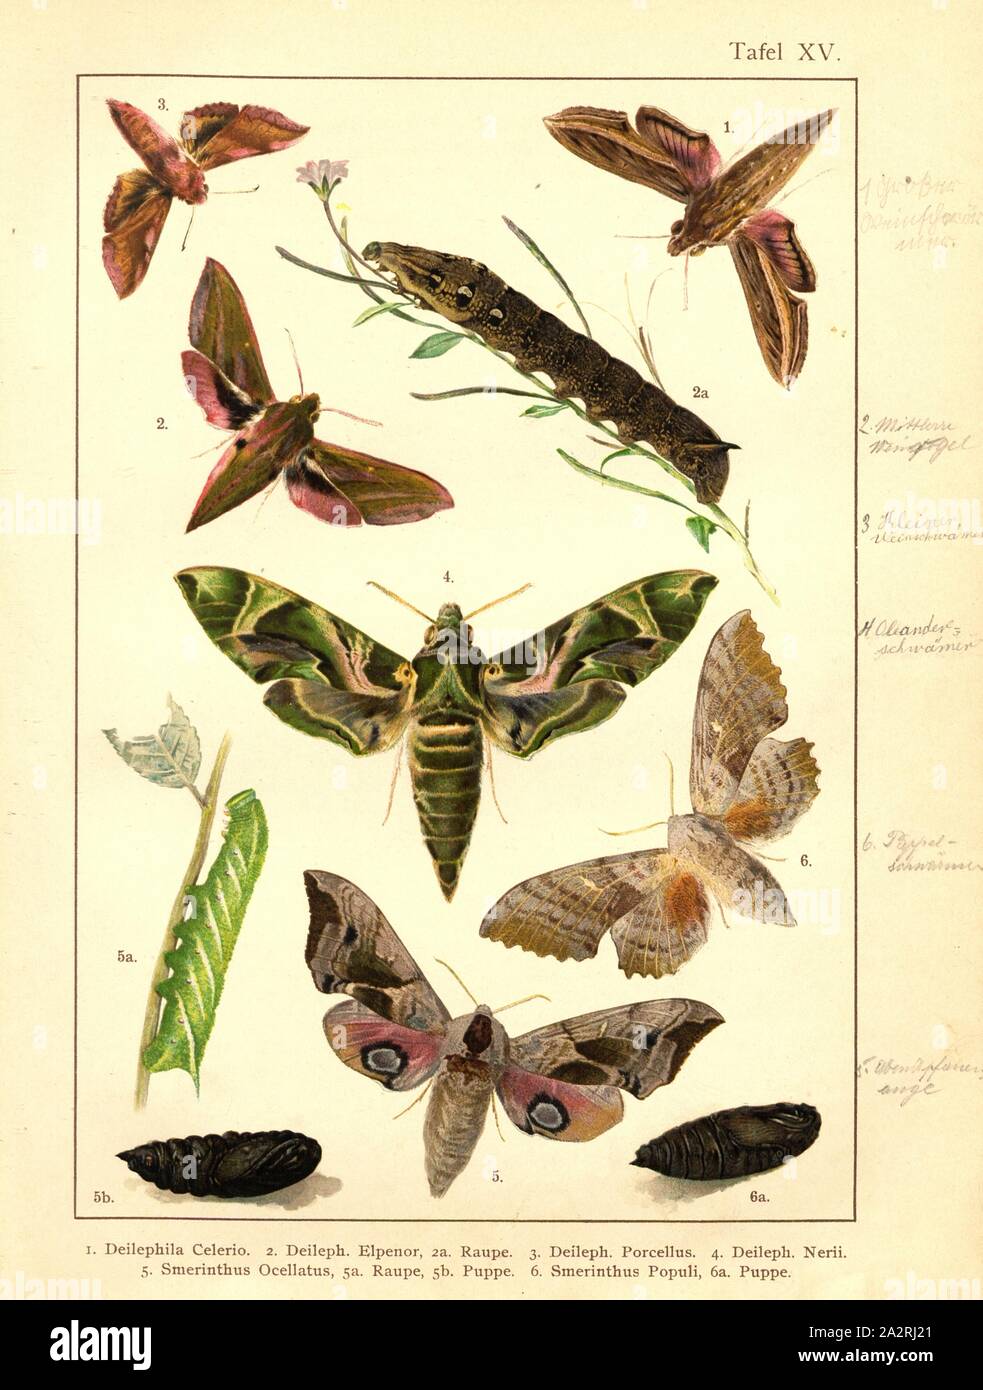 Butterflies, caterpillars and pupae in Central Europe 8, Deilephila Celerio, Deileph., Elpenor, Deileph., Porcellus, Deileph., Nerii, Smerinthus ocellatus, Smerinthus populi, Plate XV, after p. 60, Deuchert, Heinrich (del. ad. nat.); Slocombe, A. (del. ad nat.), 1893, Max Korb; Heinrich Deuchert; A. Slocombe: Die Schmetterlinge Mittel-Europas: Darstellung und Beschreibung der hauptsächlichen mitteleuropäischen Schmetterlinge nebst Anleitung, dieselben zu fangen oder zu züchten und eine Sammlung anzulegen. Nürnberg: Theo. Stroeser's Kunstverlag, [1893 Stock Photo